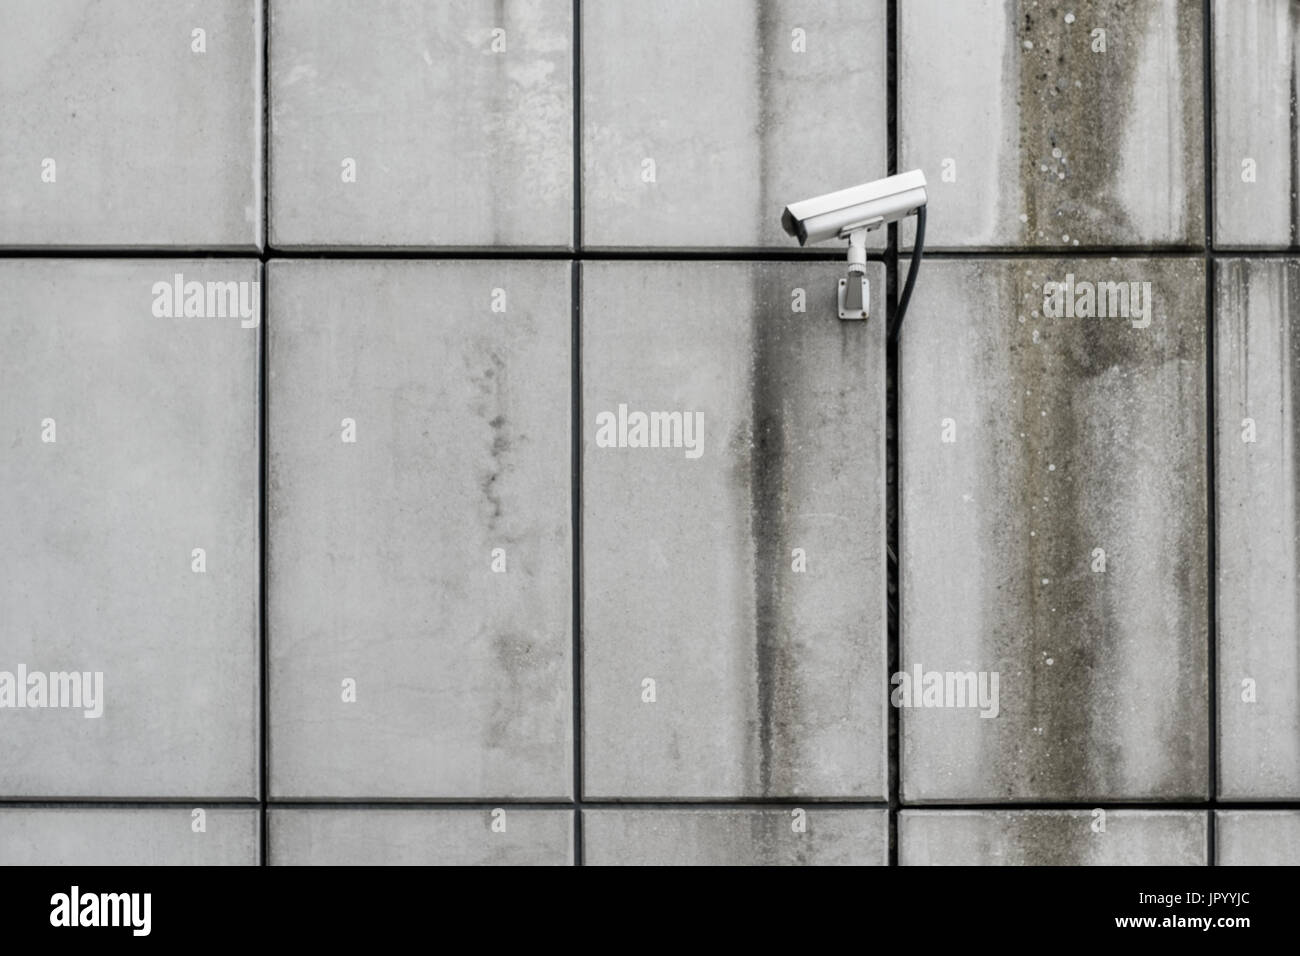 Videocamera di sicurezza - cctv sulla parete edilizia Foto Stock